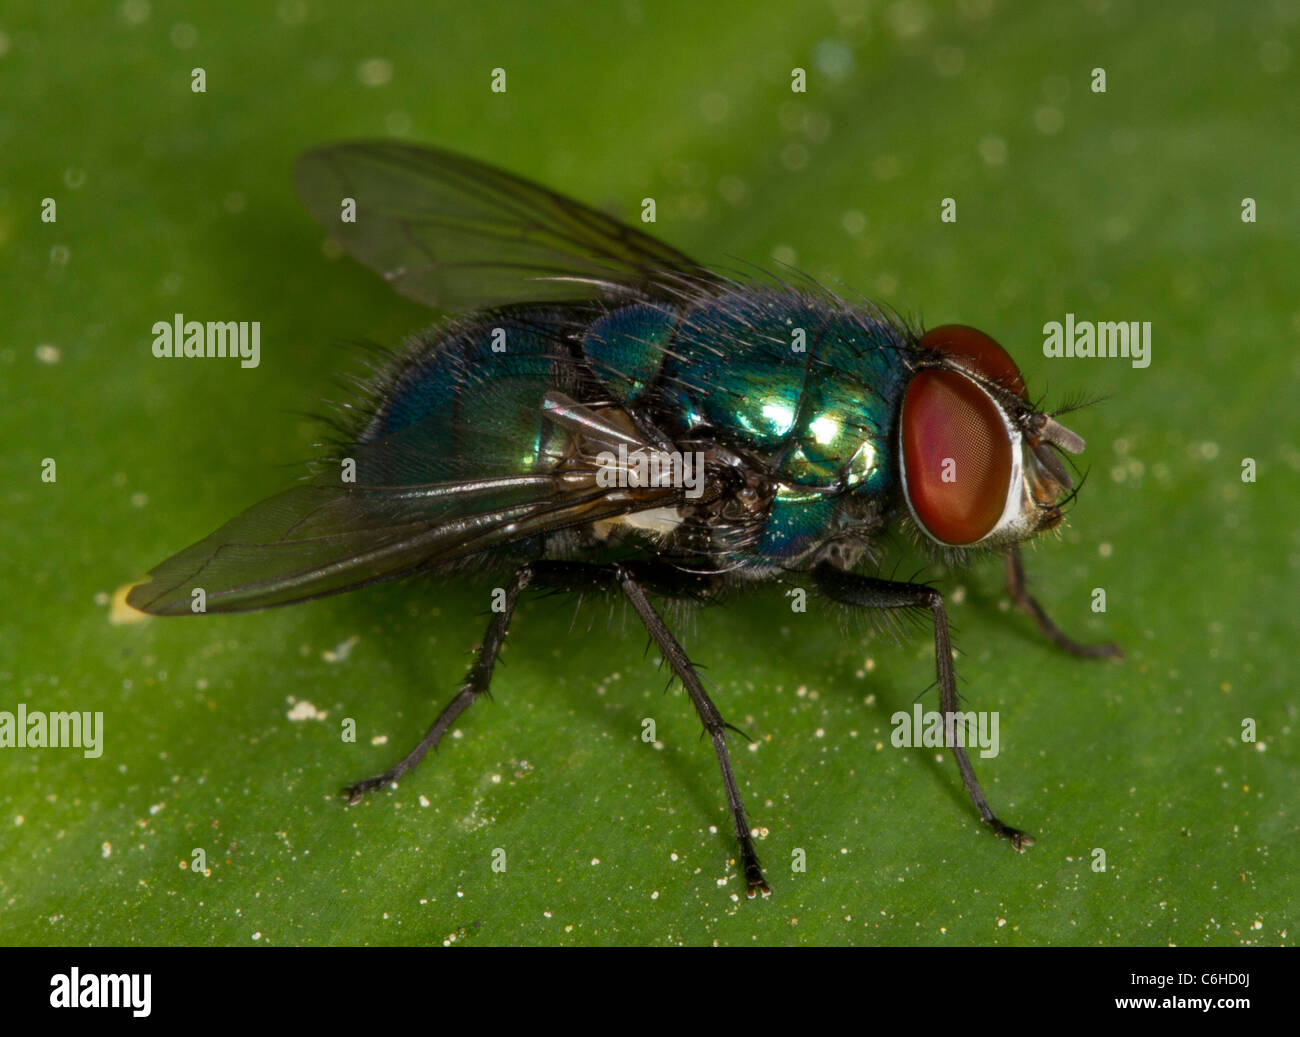 Greenbottle fly (Lucilia sericata ou Paenicia), une mouche commune. Utilisé par les entomologistes de médecine légale pour déterminer l'âge des cadavres. Banque D'Images